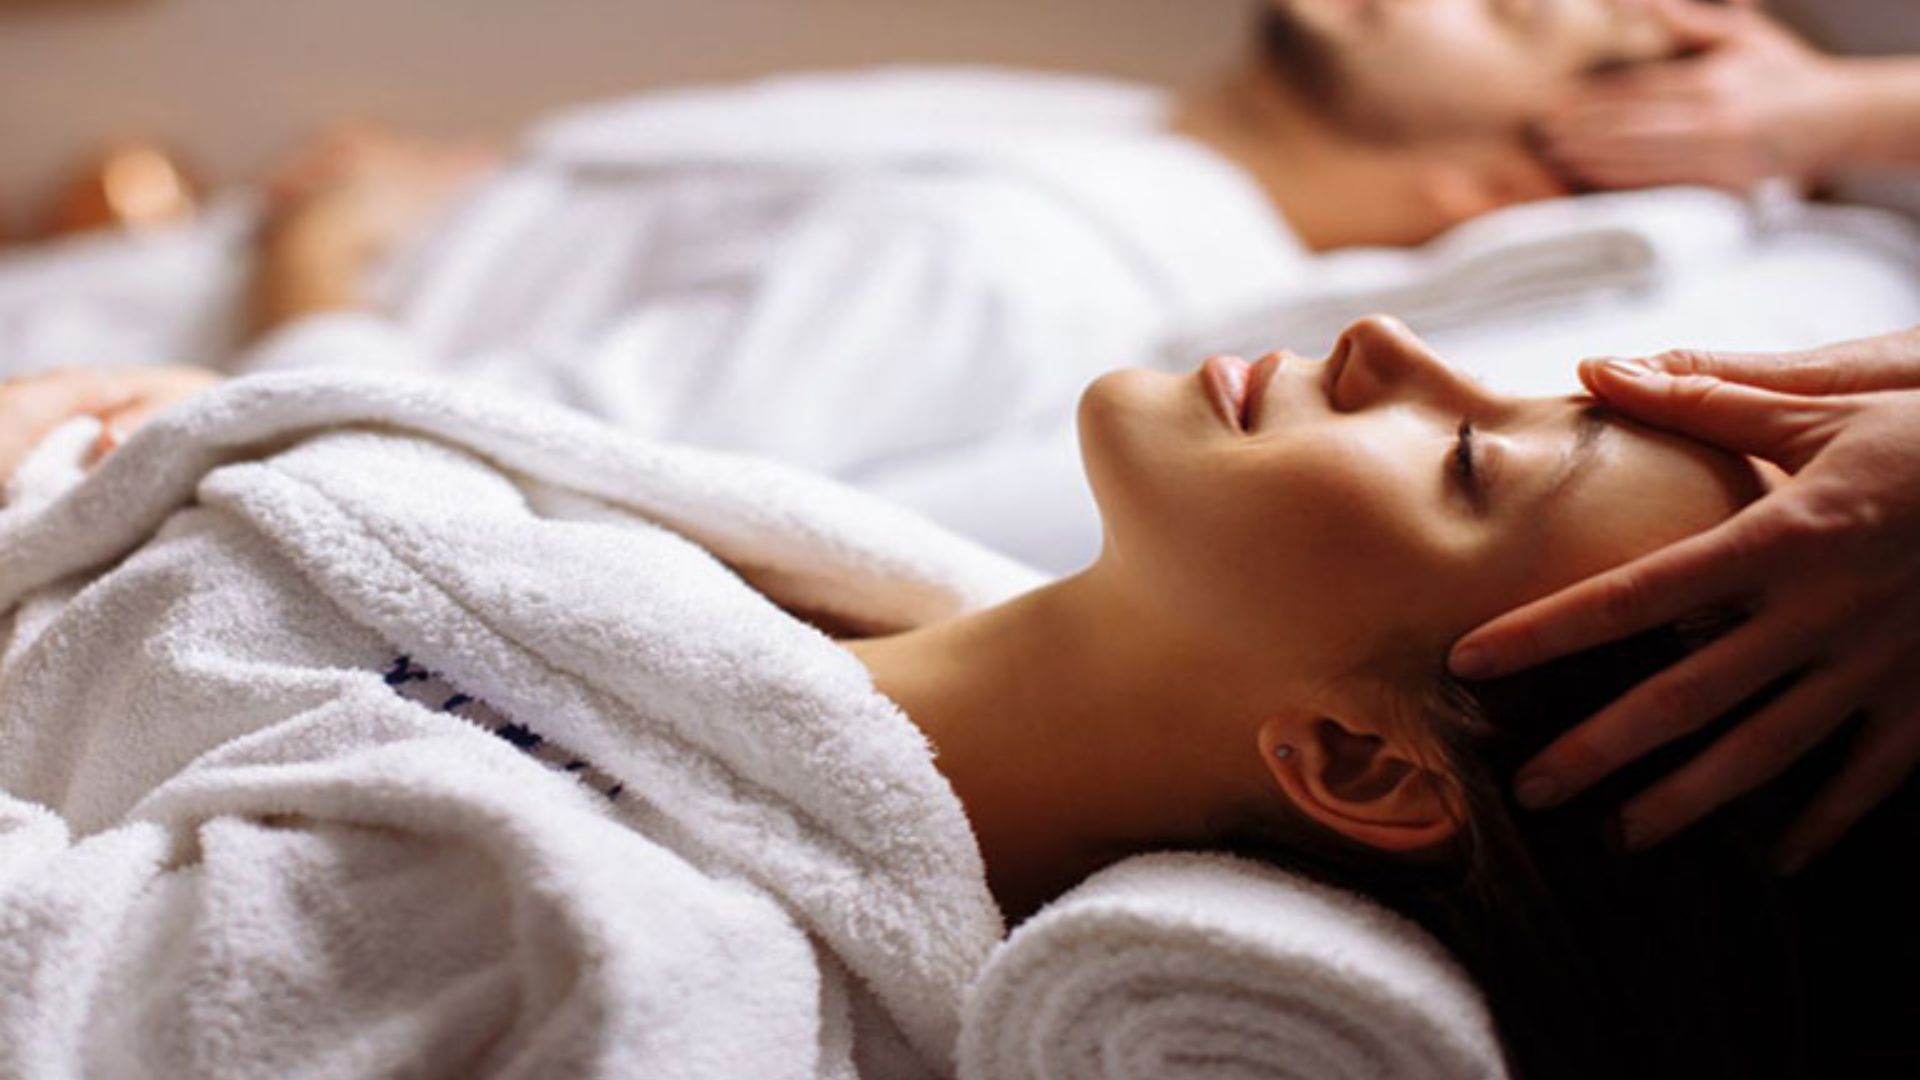 Massage Hội người mù tại Đà Nẵng – Nơi massage giá rẻ tại Đà Nẵng chất lượng, uy tín